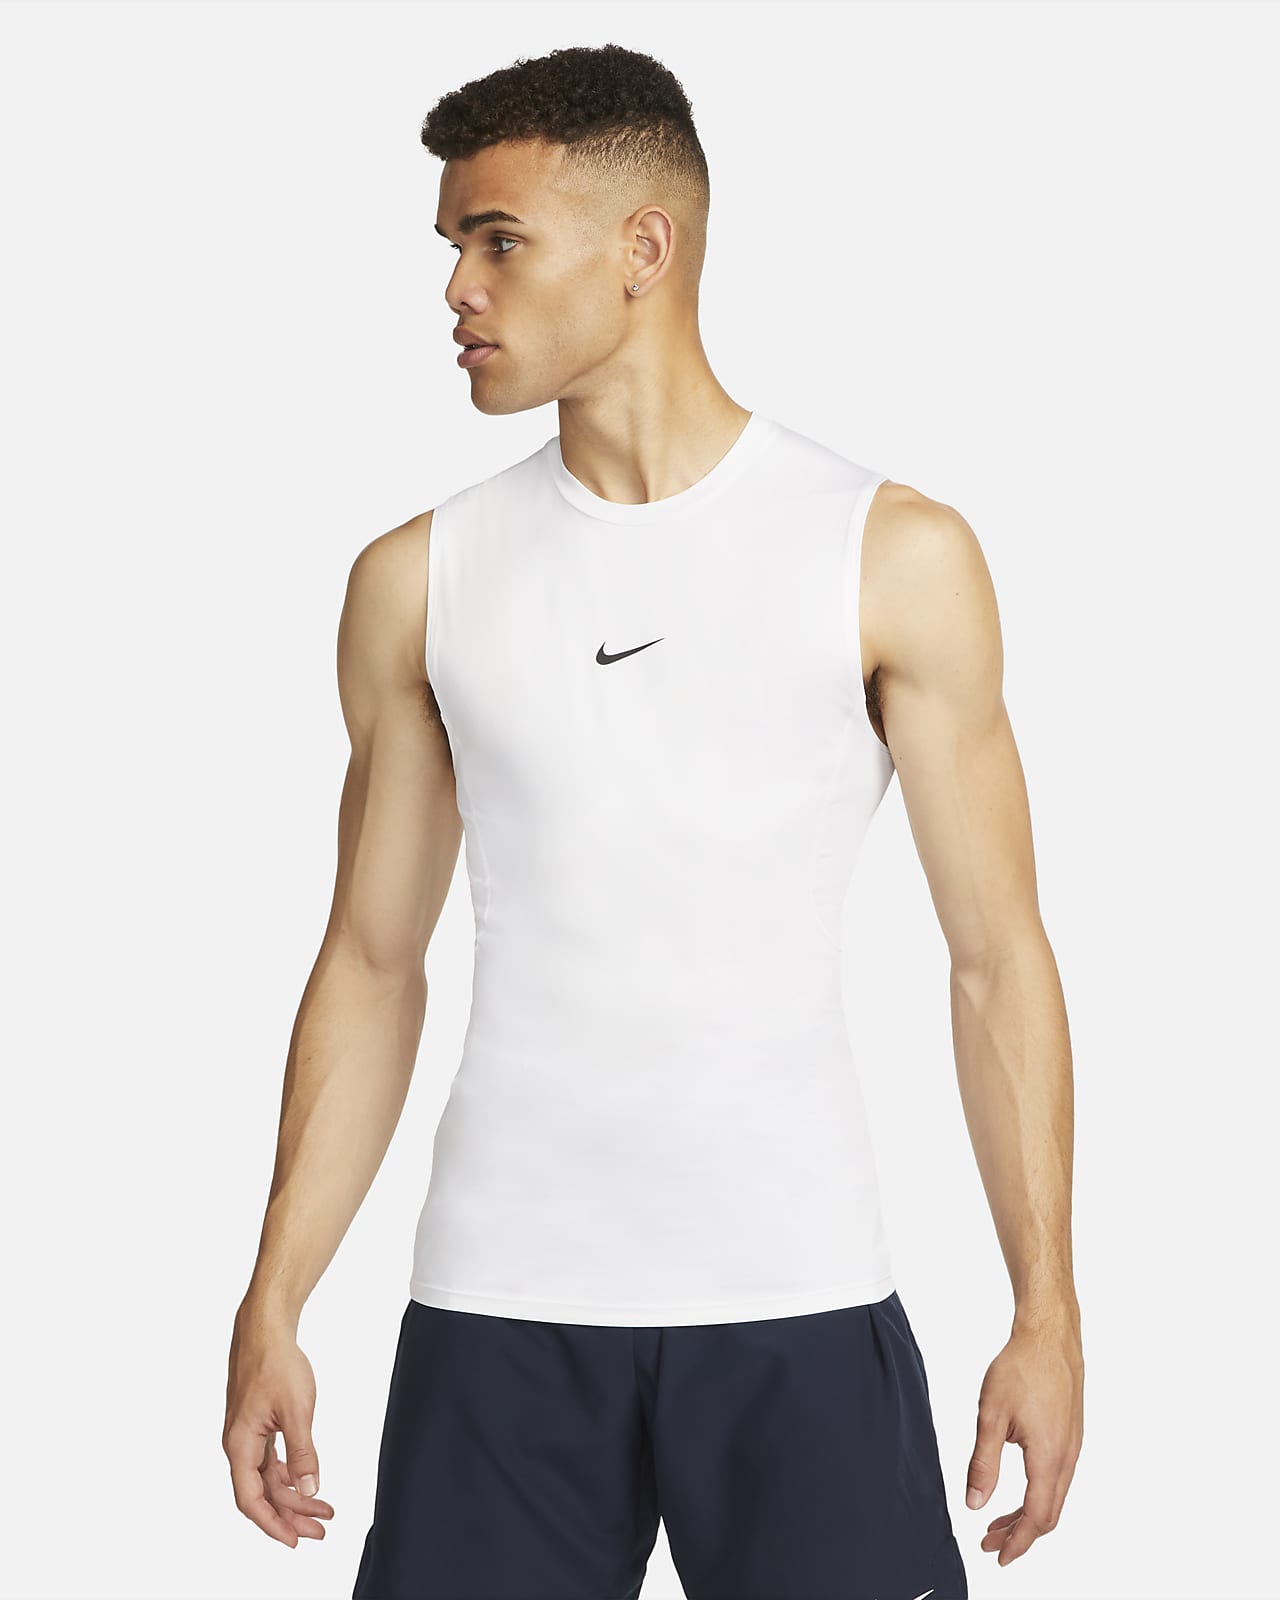 €0 - €50 Slim Training & Gym Tops & T-Shirts. Nike LU